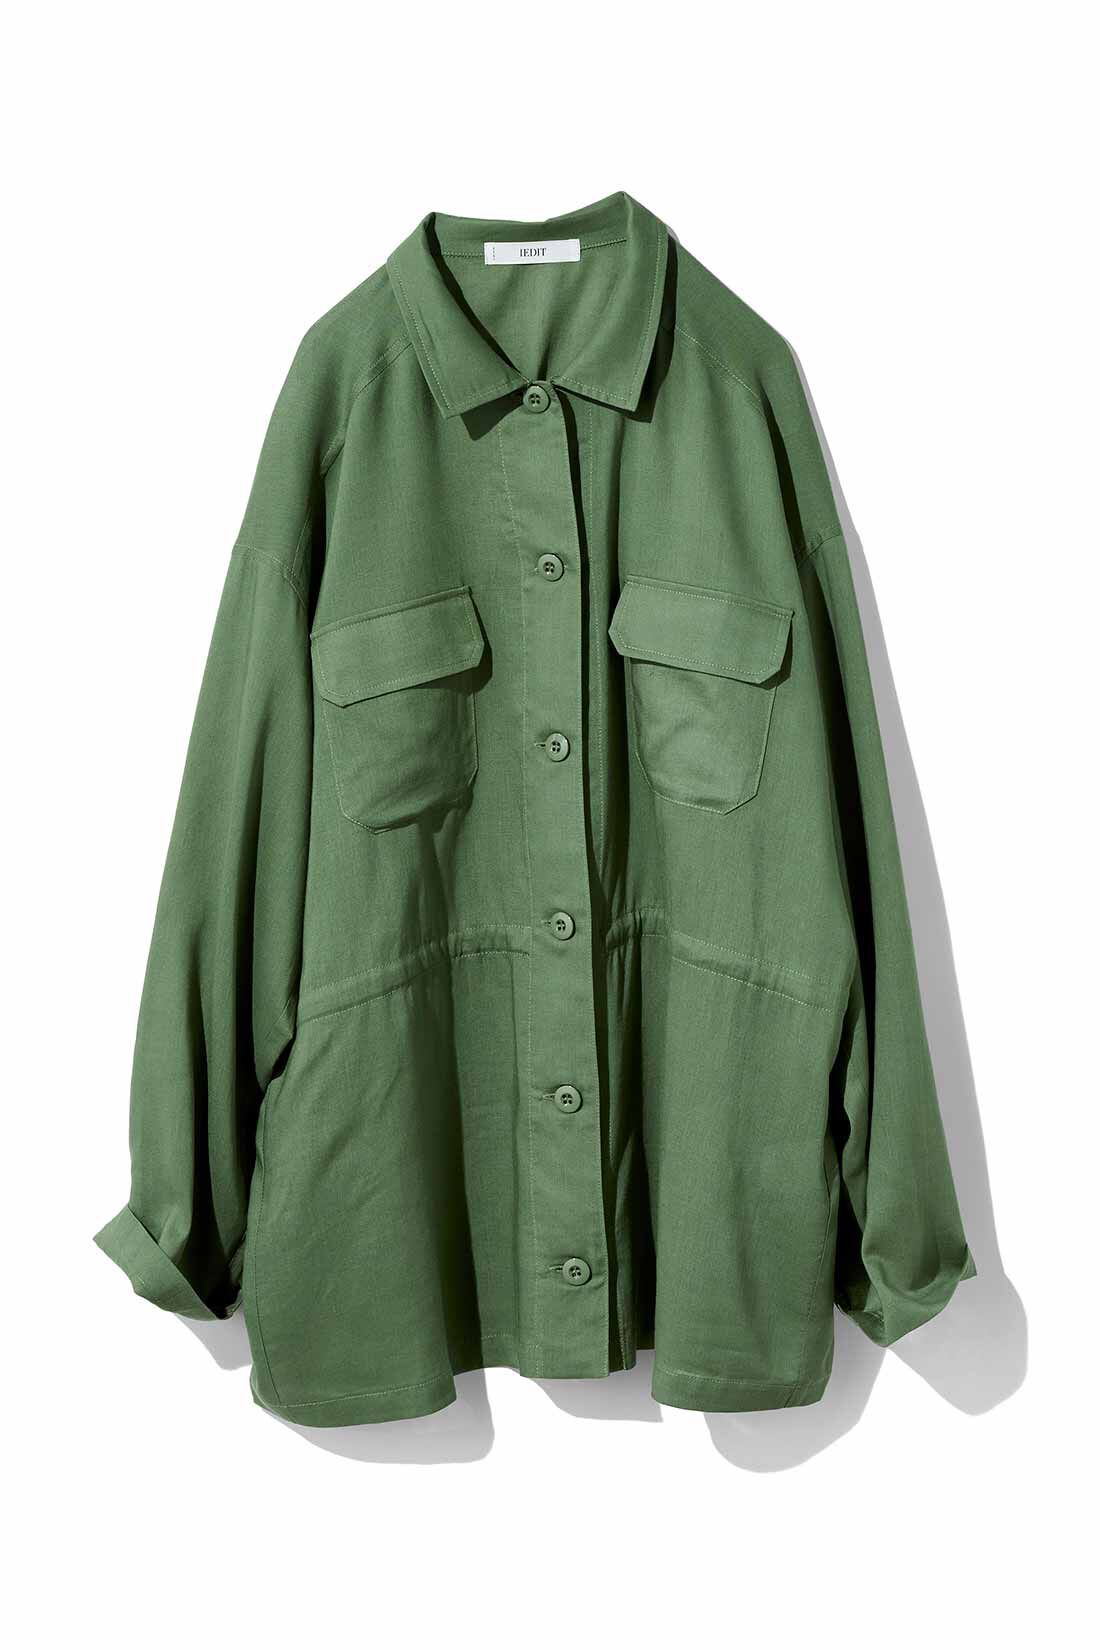 IEDIT|IEDIT[イディット]　リネン混素材のミリタリーシャツジャケット〈ベージュ〉|〈カーキグリーン〉